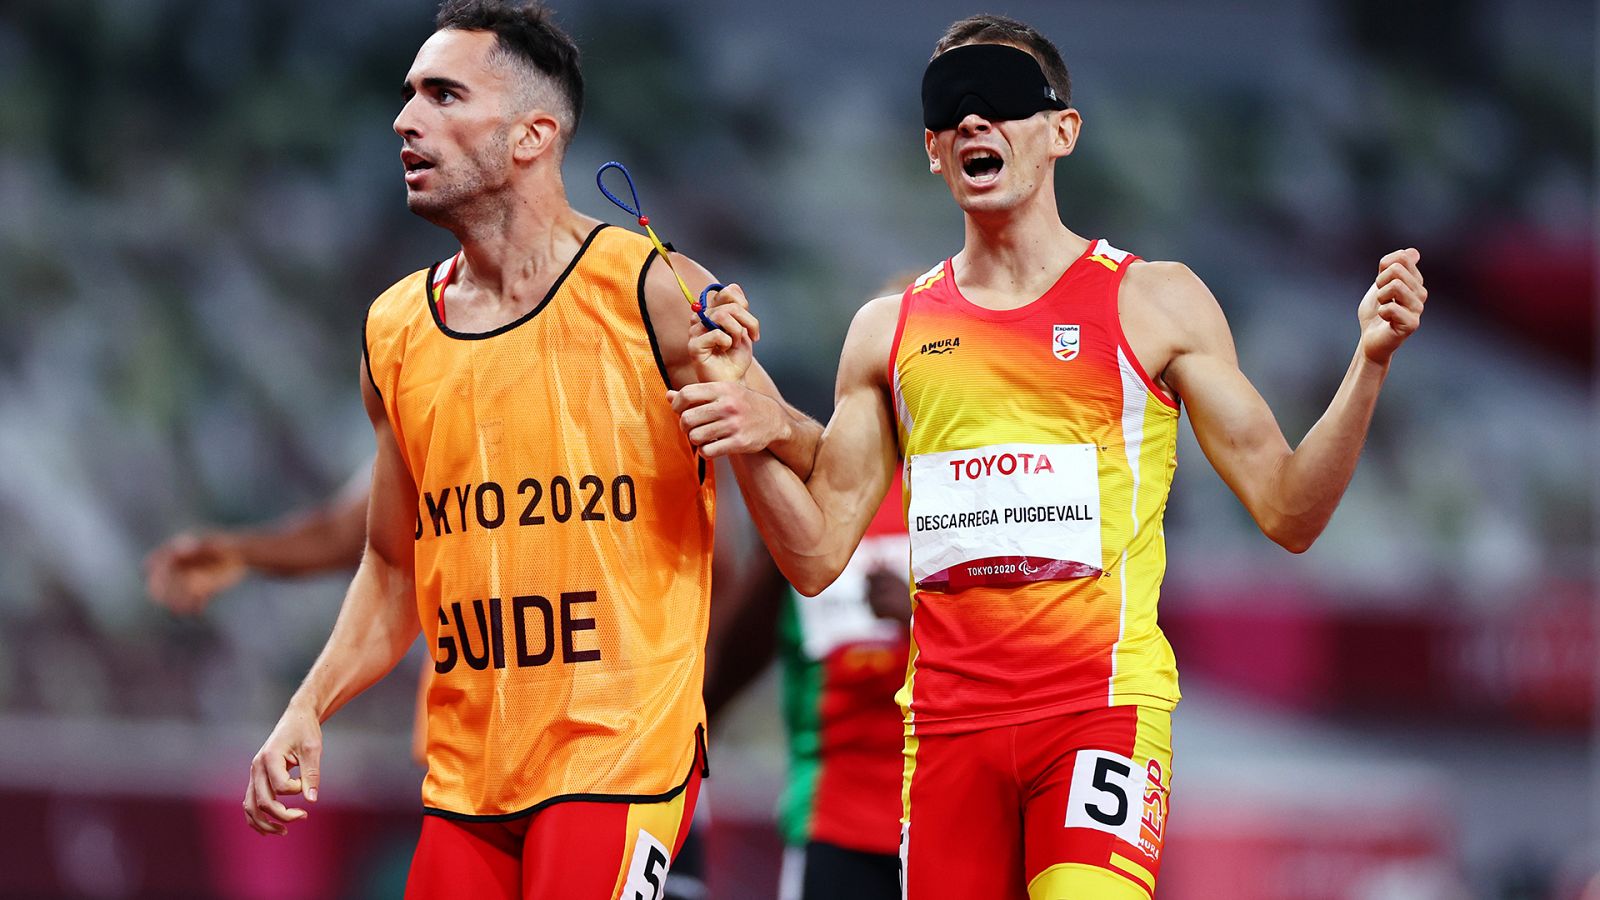 Paralímpicos Tokyo 2020 - Atletismo: Final 400 metros T11 con Gerard Descarrega - Ver ahora